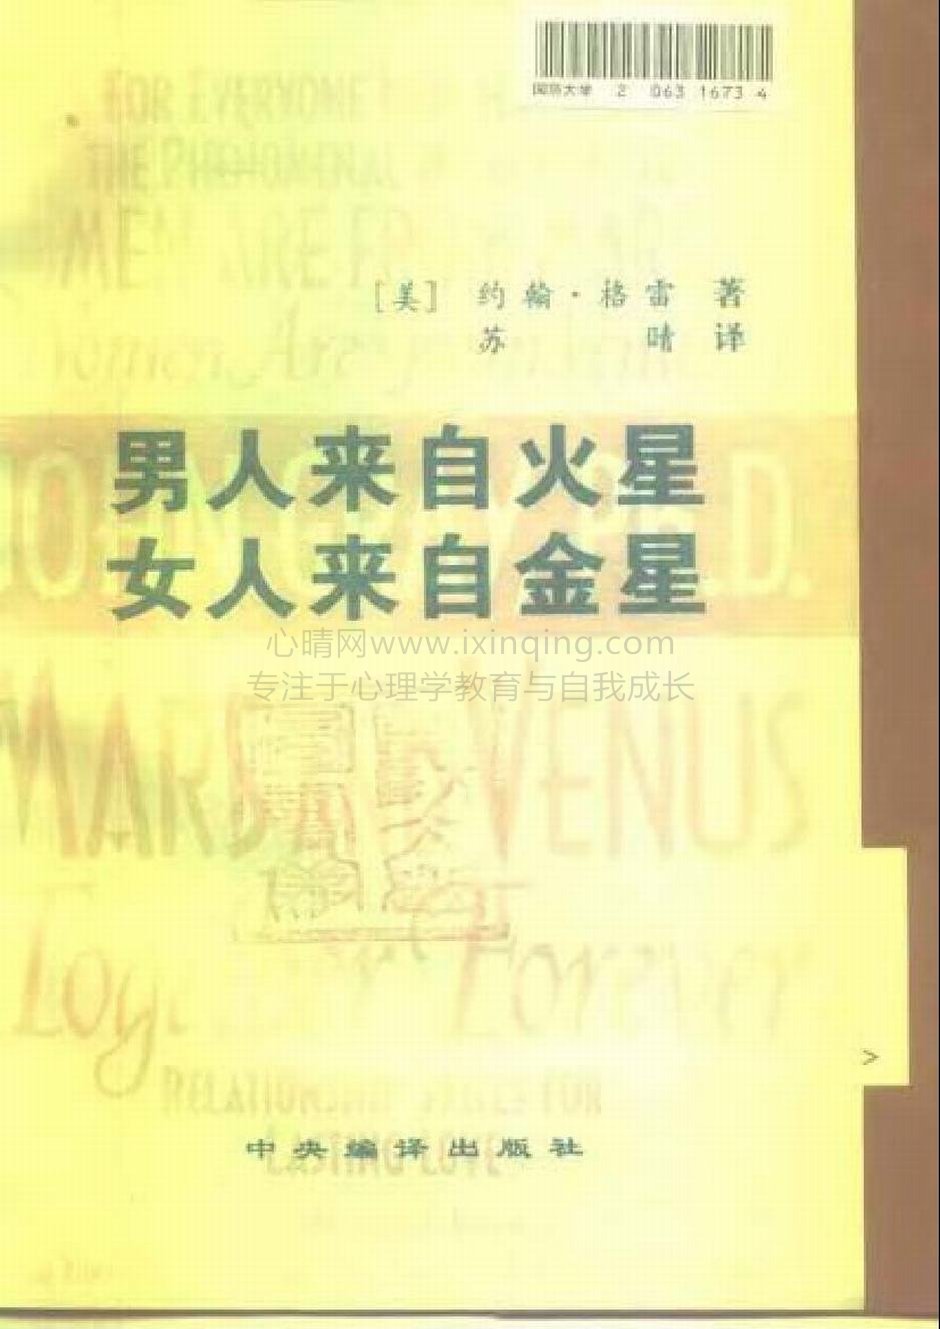 封面、原序、译序、中文版出版前言(3)